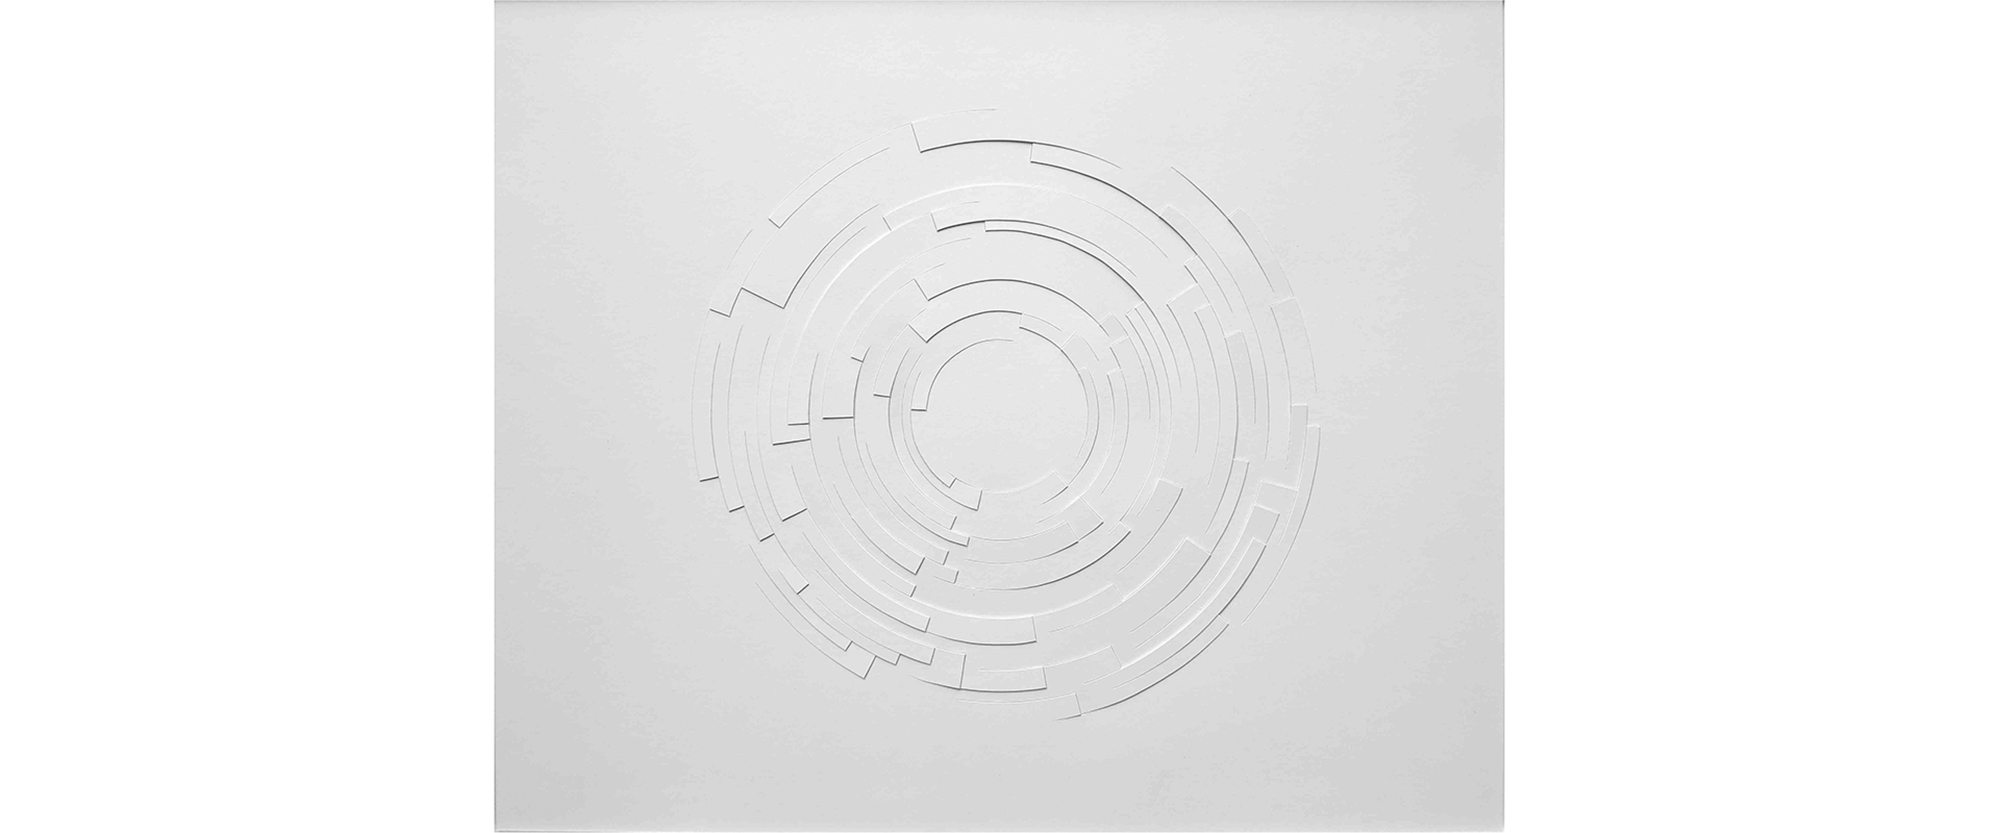 Kreisausschnitt - 2019, Papierrelief, Karton geschnitten, 72 x 84,5 cm